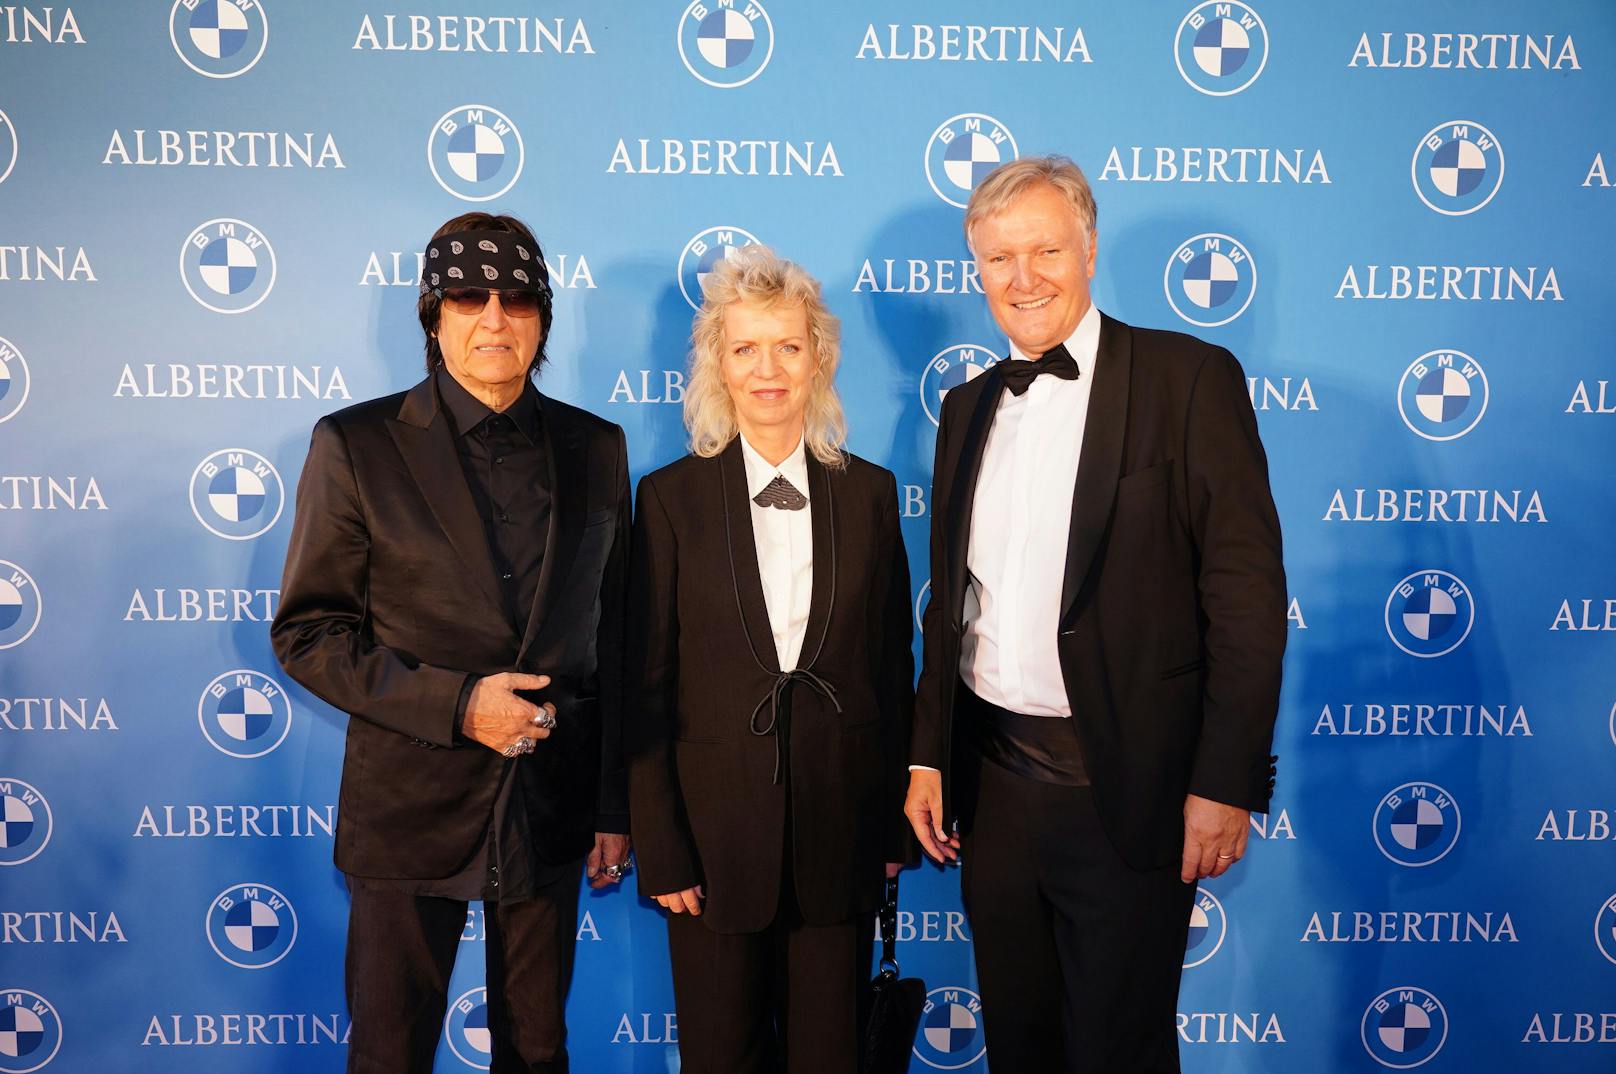 Klaus Albrecht Schröder (re.) gemeinsam mit den beiden Künstlern Katharina Grosse und Gottfried Helnwein